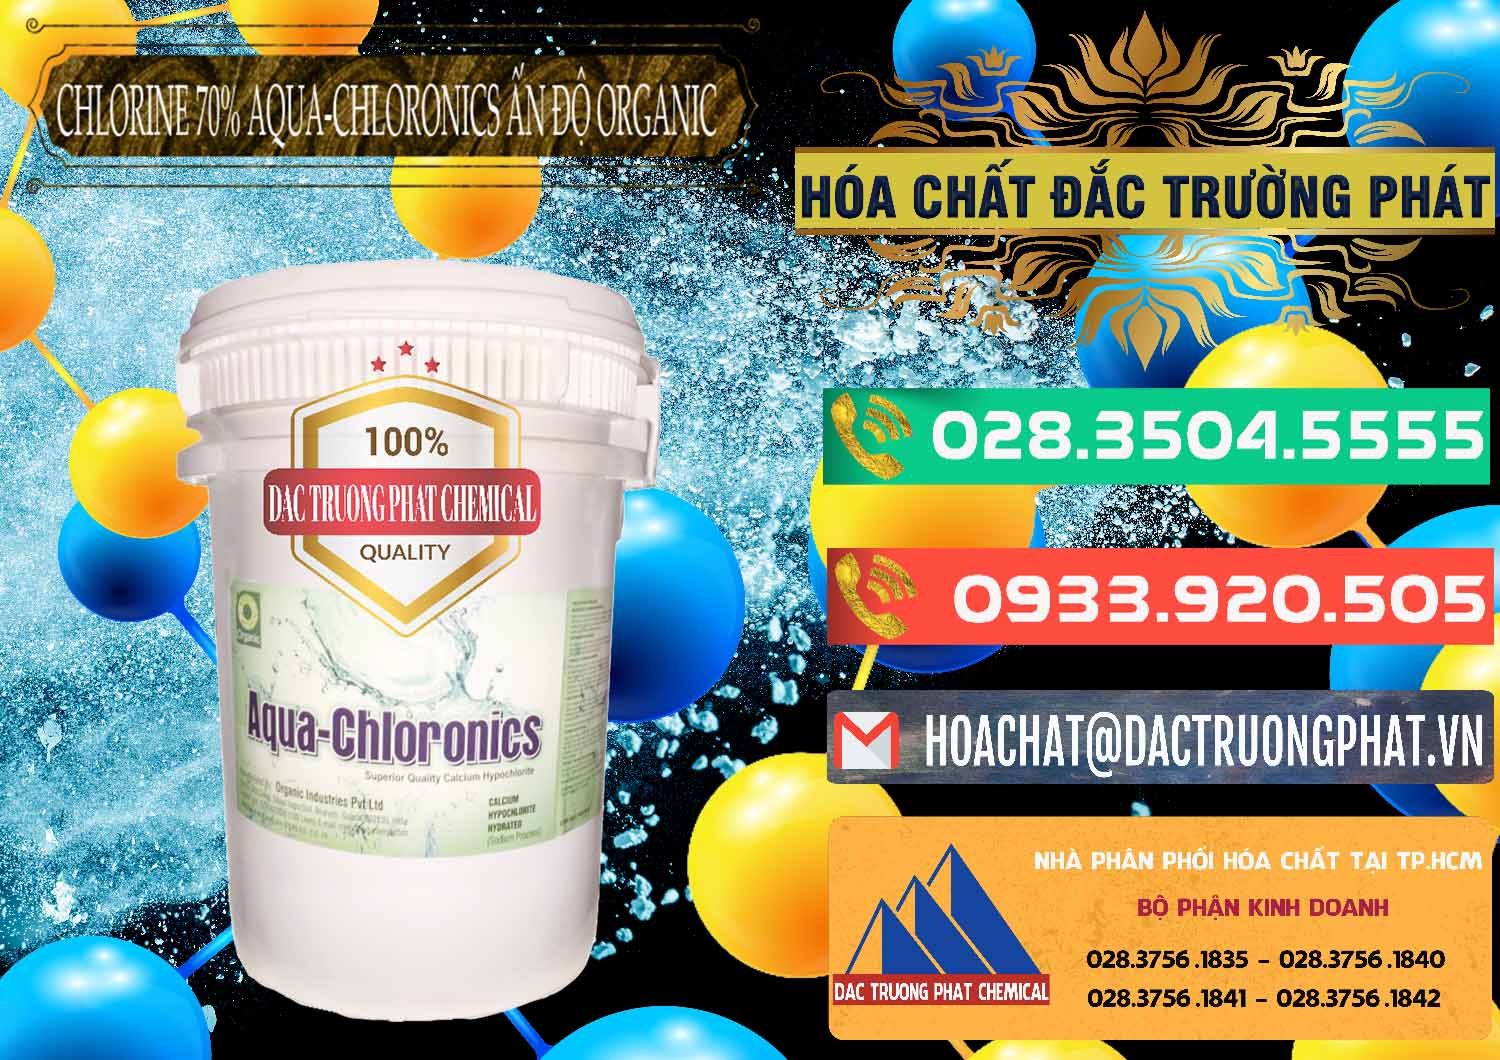 Chuyên kinh doanh & bán Chlorine – Clorin 70% Aqua-Chloronics Ấn Độ Organic India - 0211 - Nơi nhập khẩu & cung cấp hóa chất tại TP.HCM - congtyhoachat.com.vn